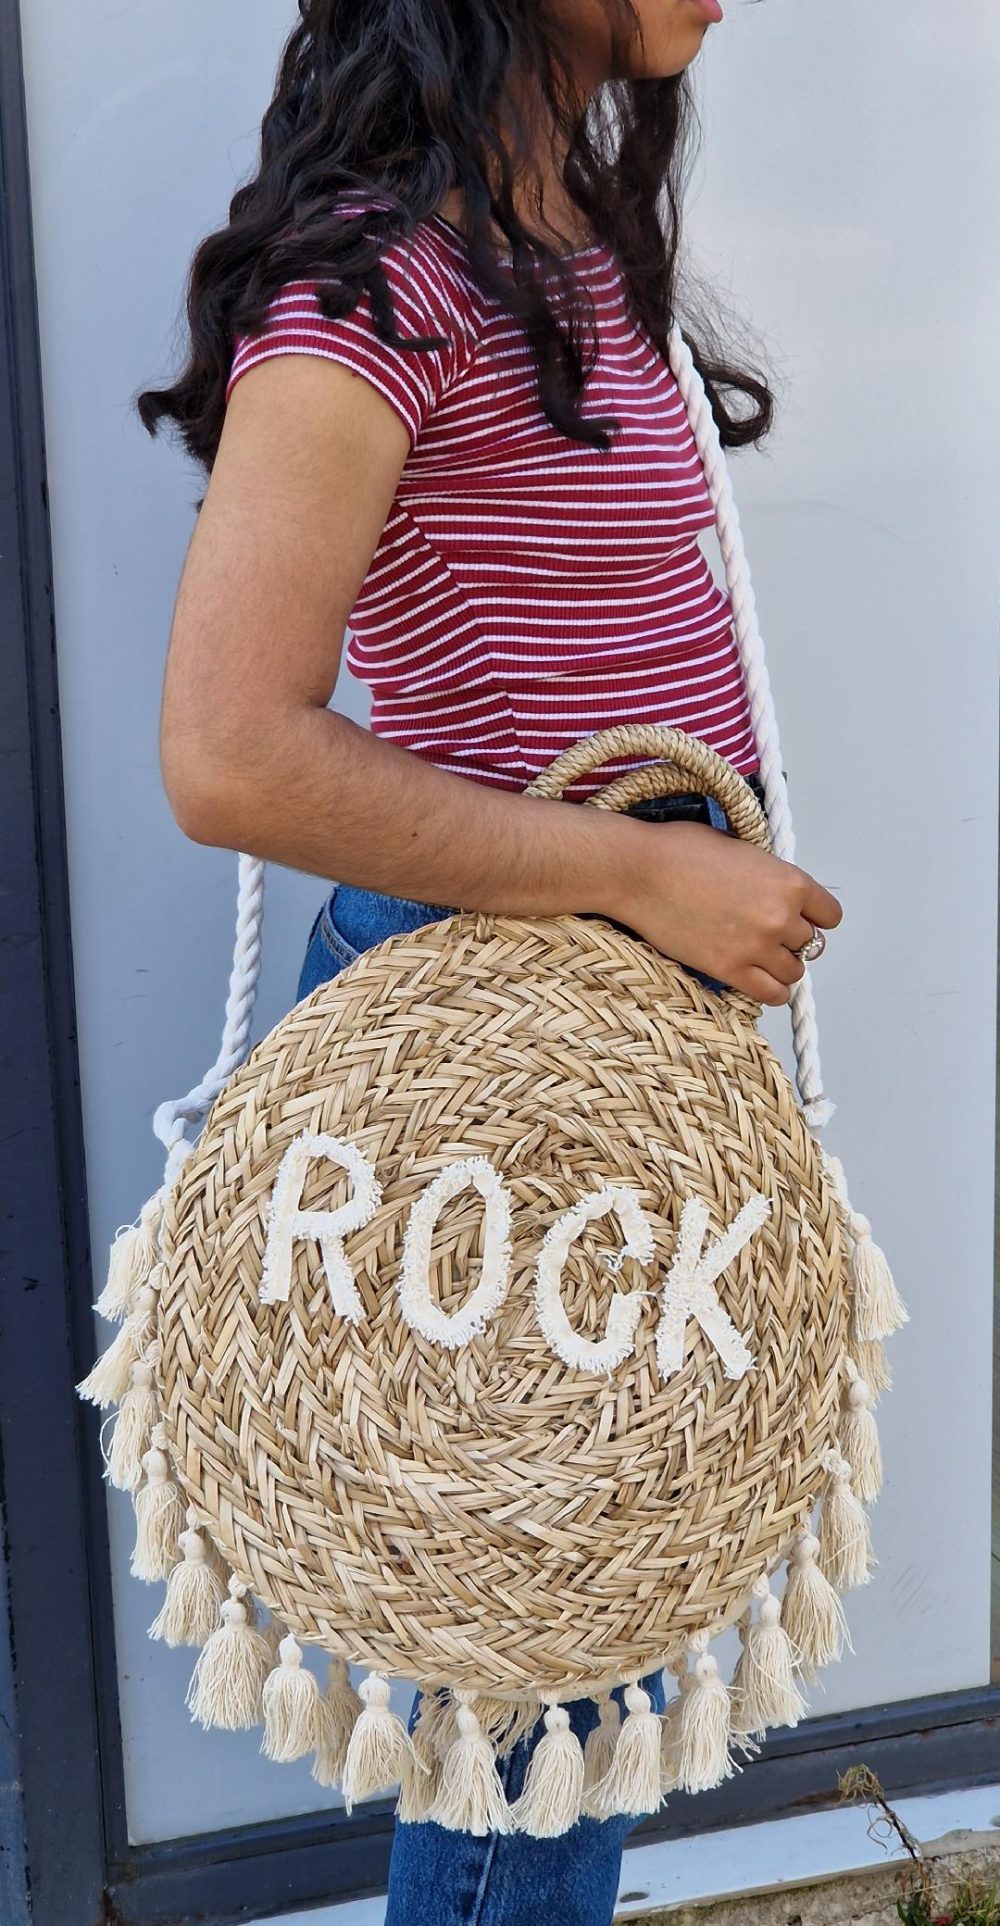 Sac en osier rond avec inscription "rock" au milieu du sac. le contour du sac est rempli de pompons.